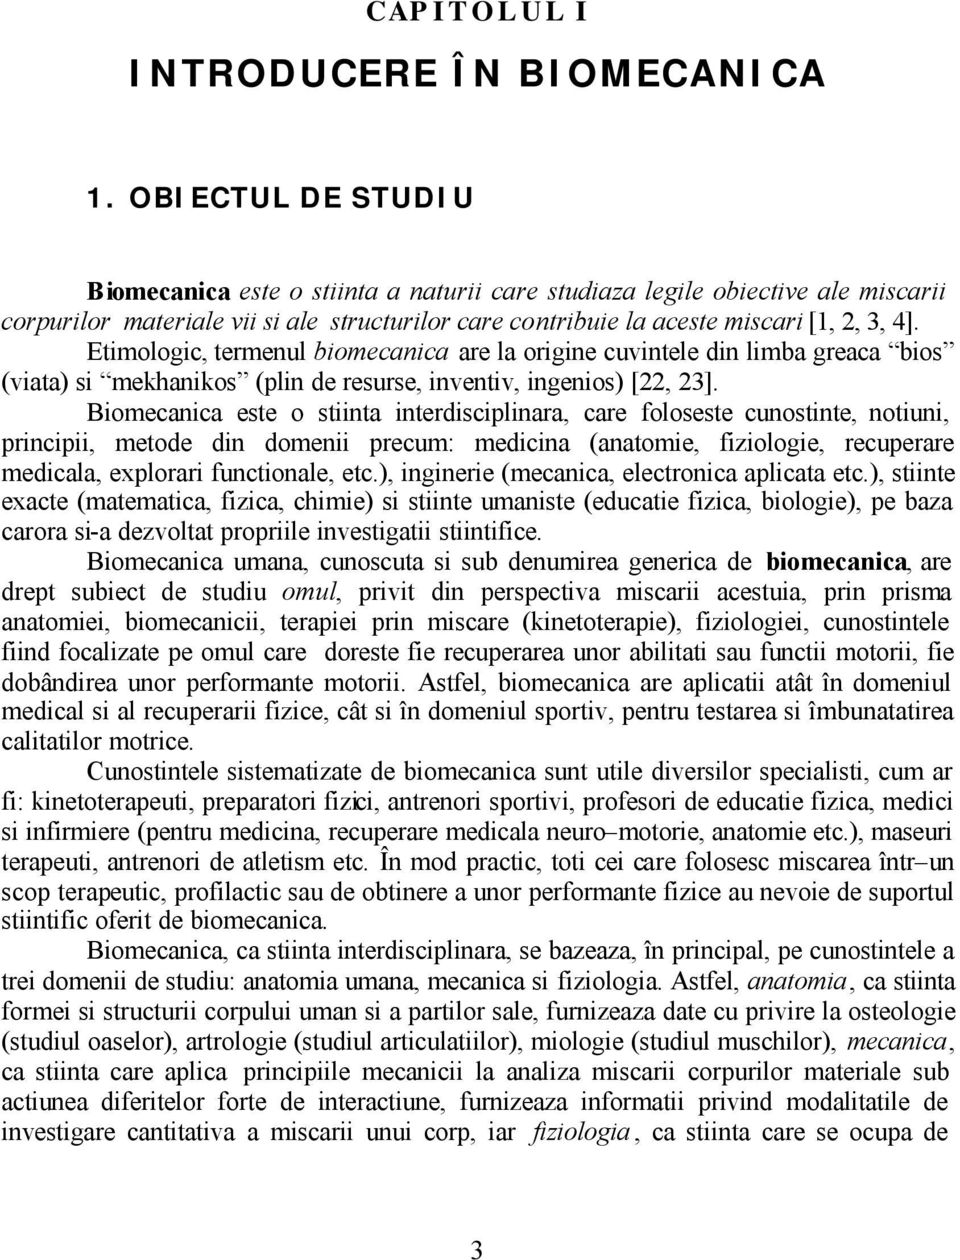 Esențiale-in-anatomie-și-biomecanică-Silviu-Gabriel-Cioroiu-text (1)